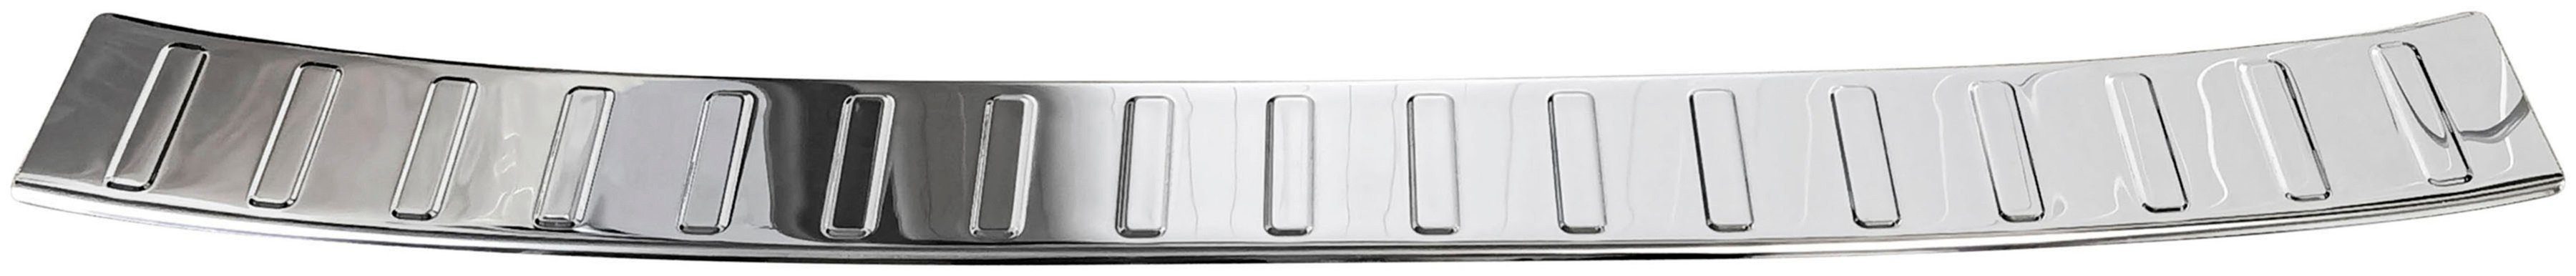 RECAMBO Ladekantenschutz, Zubehör für 356, Typ 2015, mit TIPO Abkantung Edelstahl KOMBI, FIAT poliert, chrom